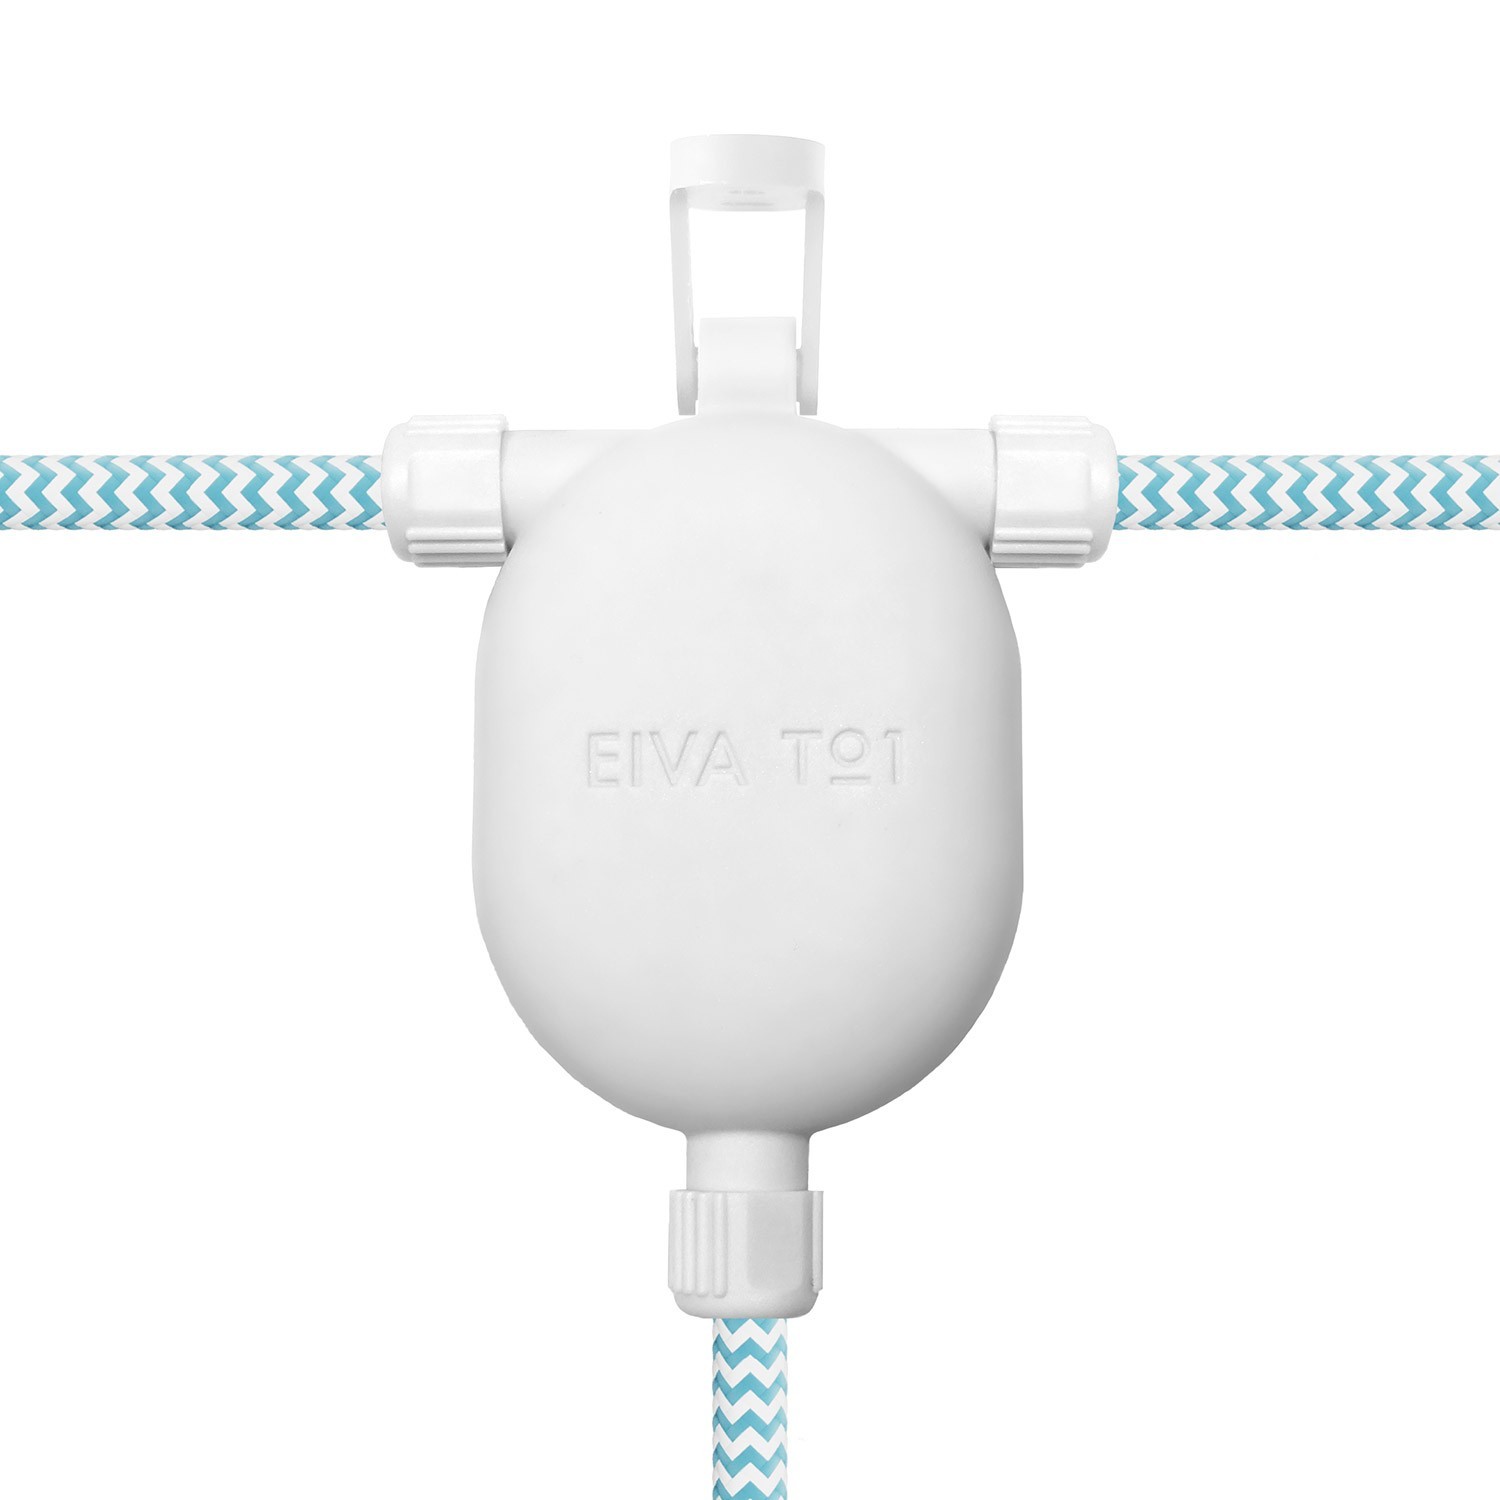 EIVA-3, connecteur 3 voies extérieur IP65 snap-in